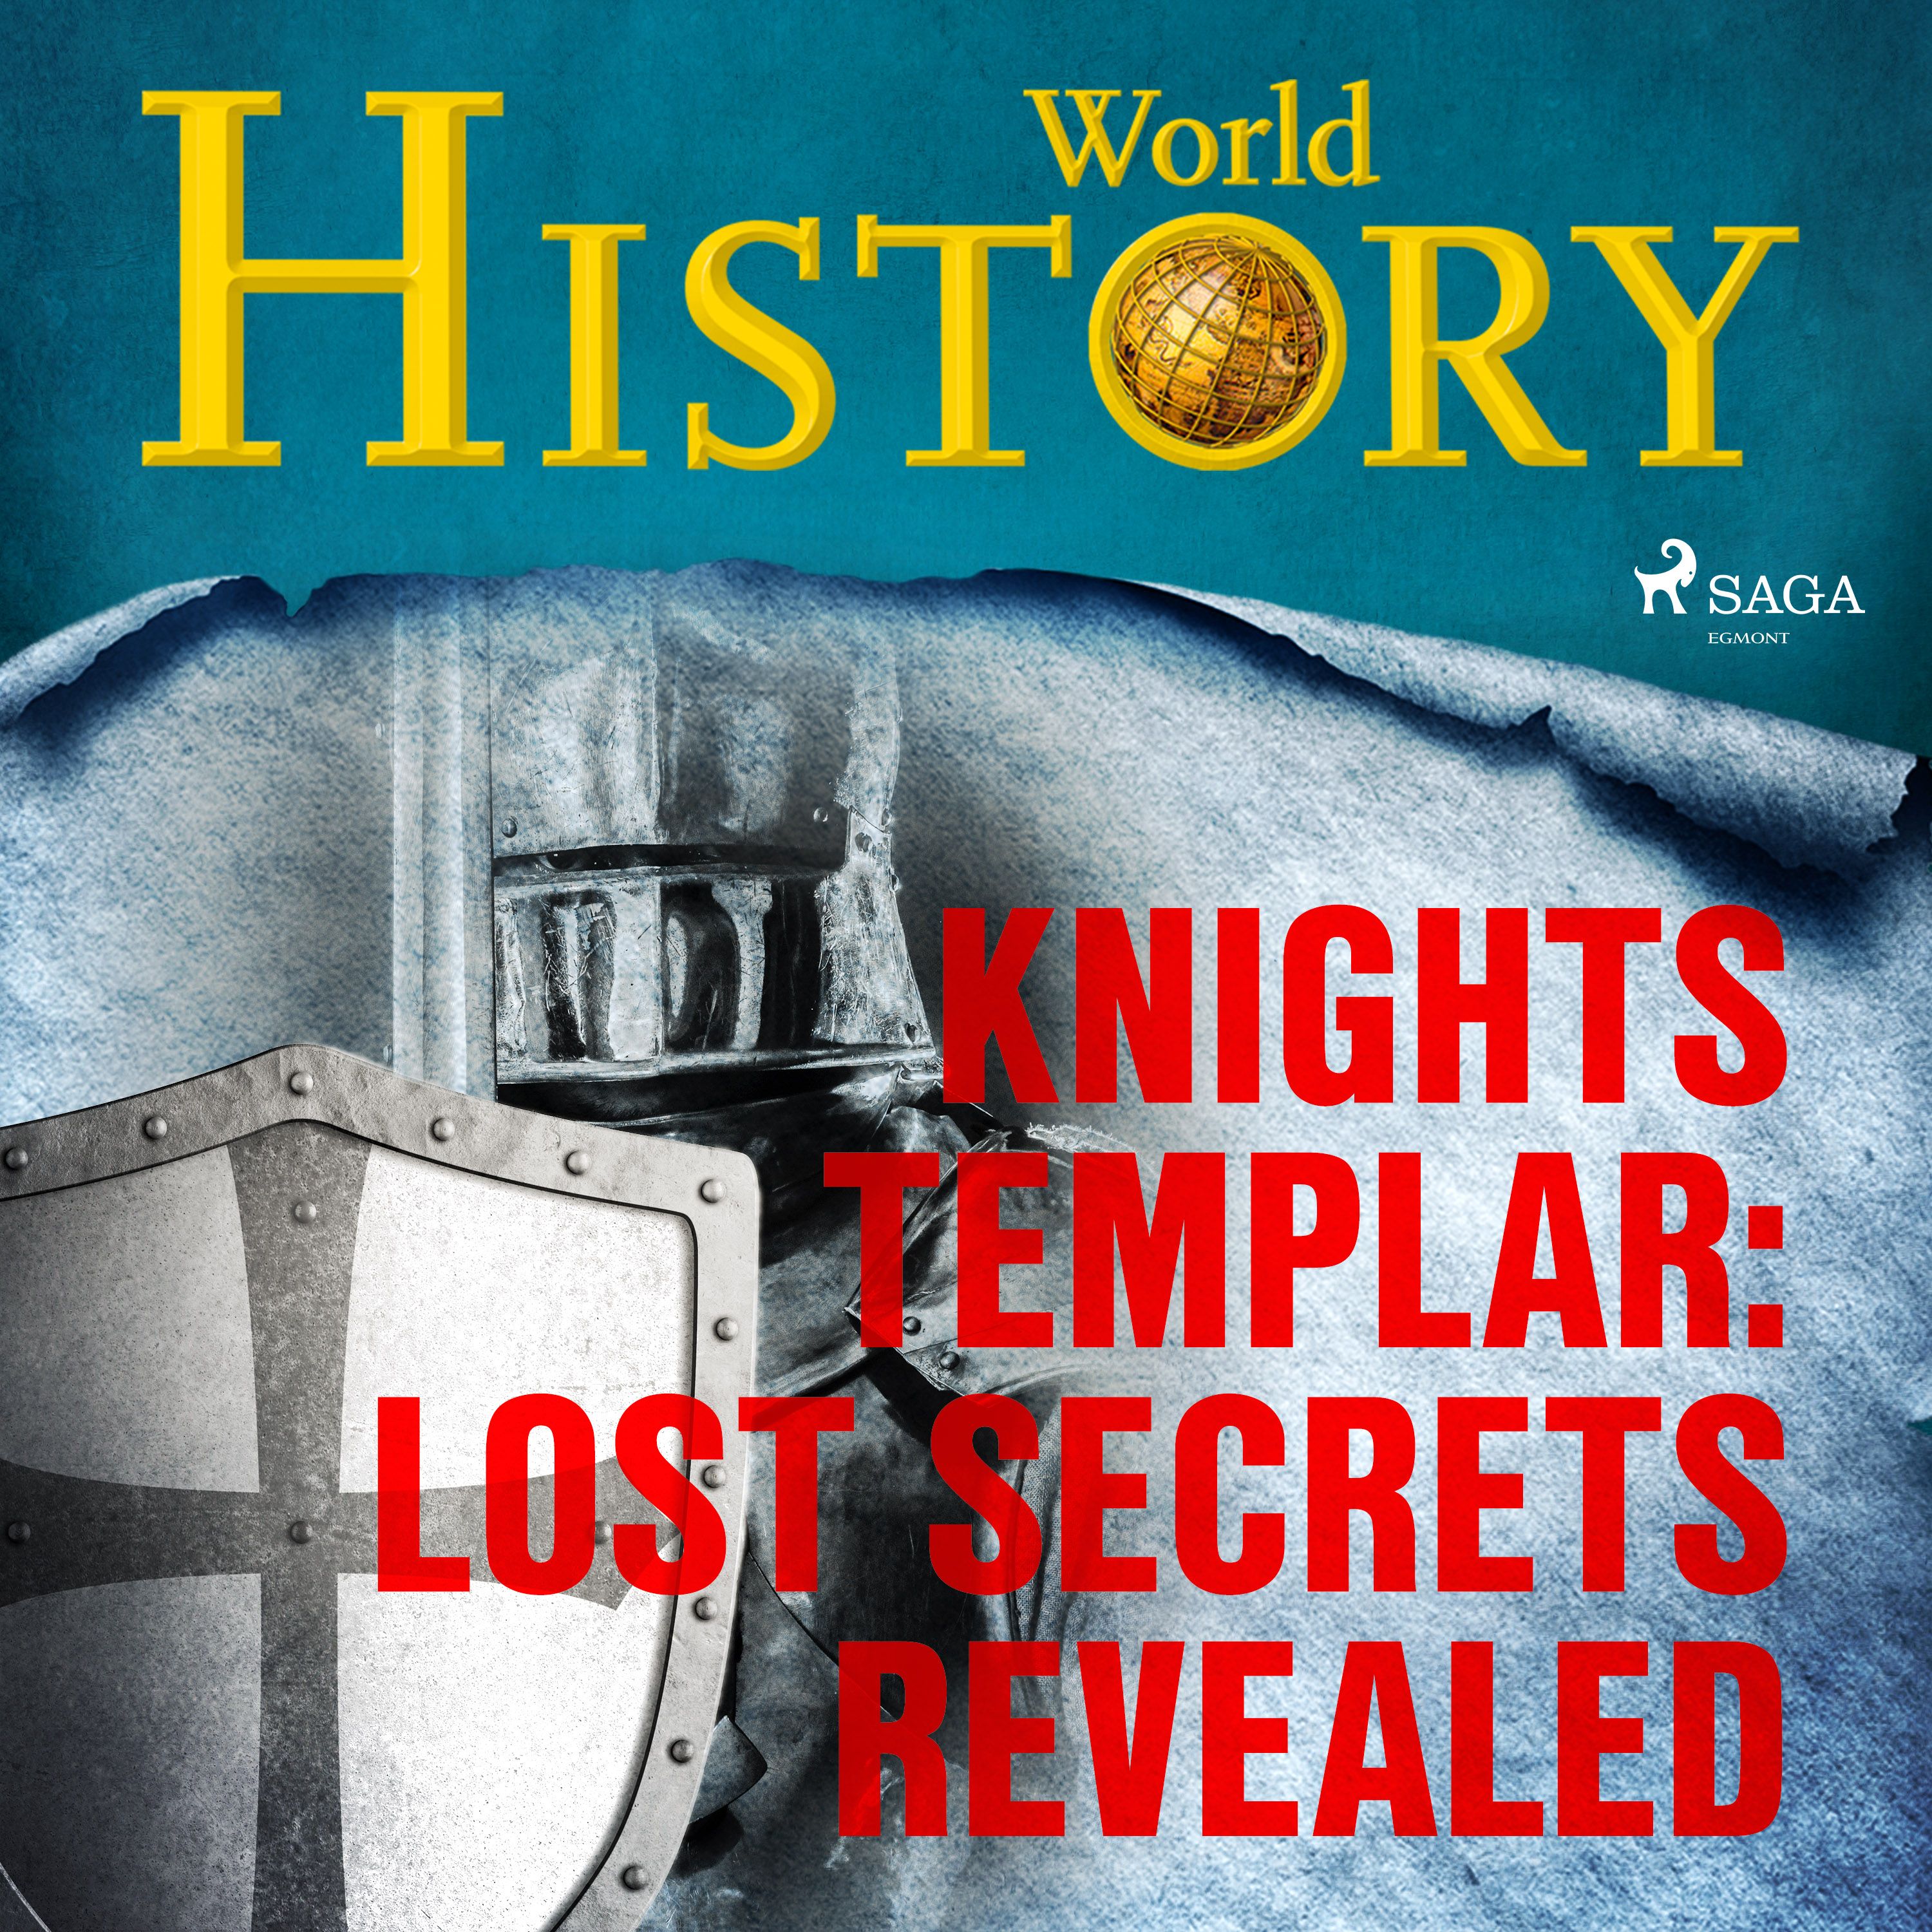 Knights Templar: Lost Secrets Revealed, lydbog af World History